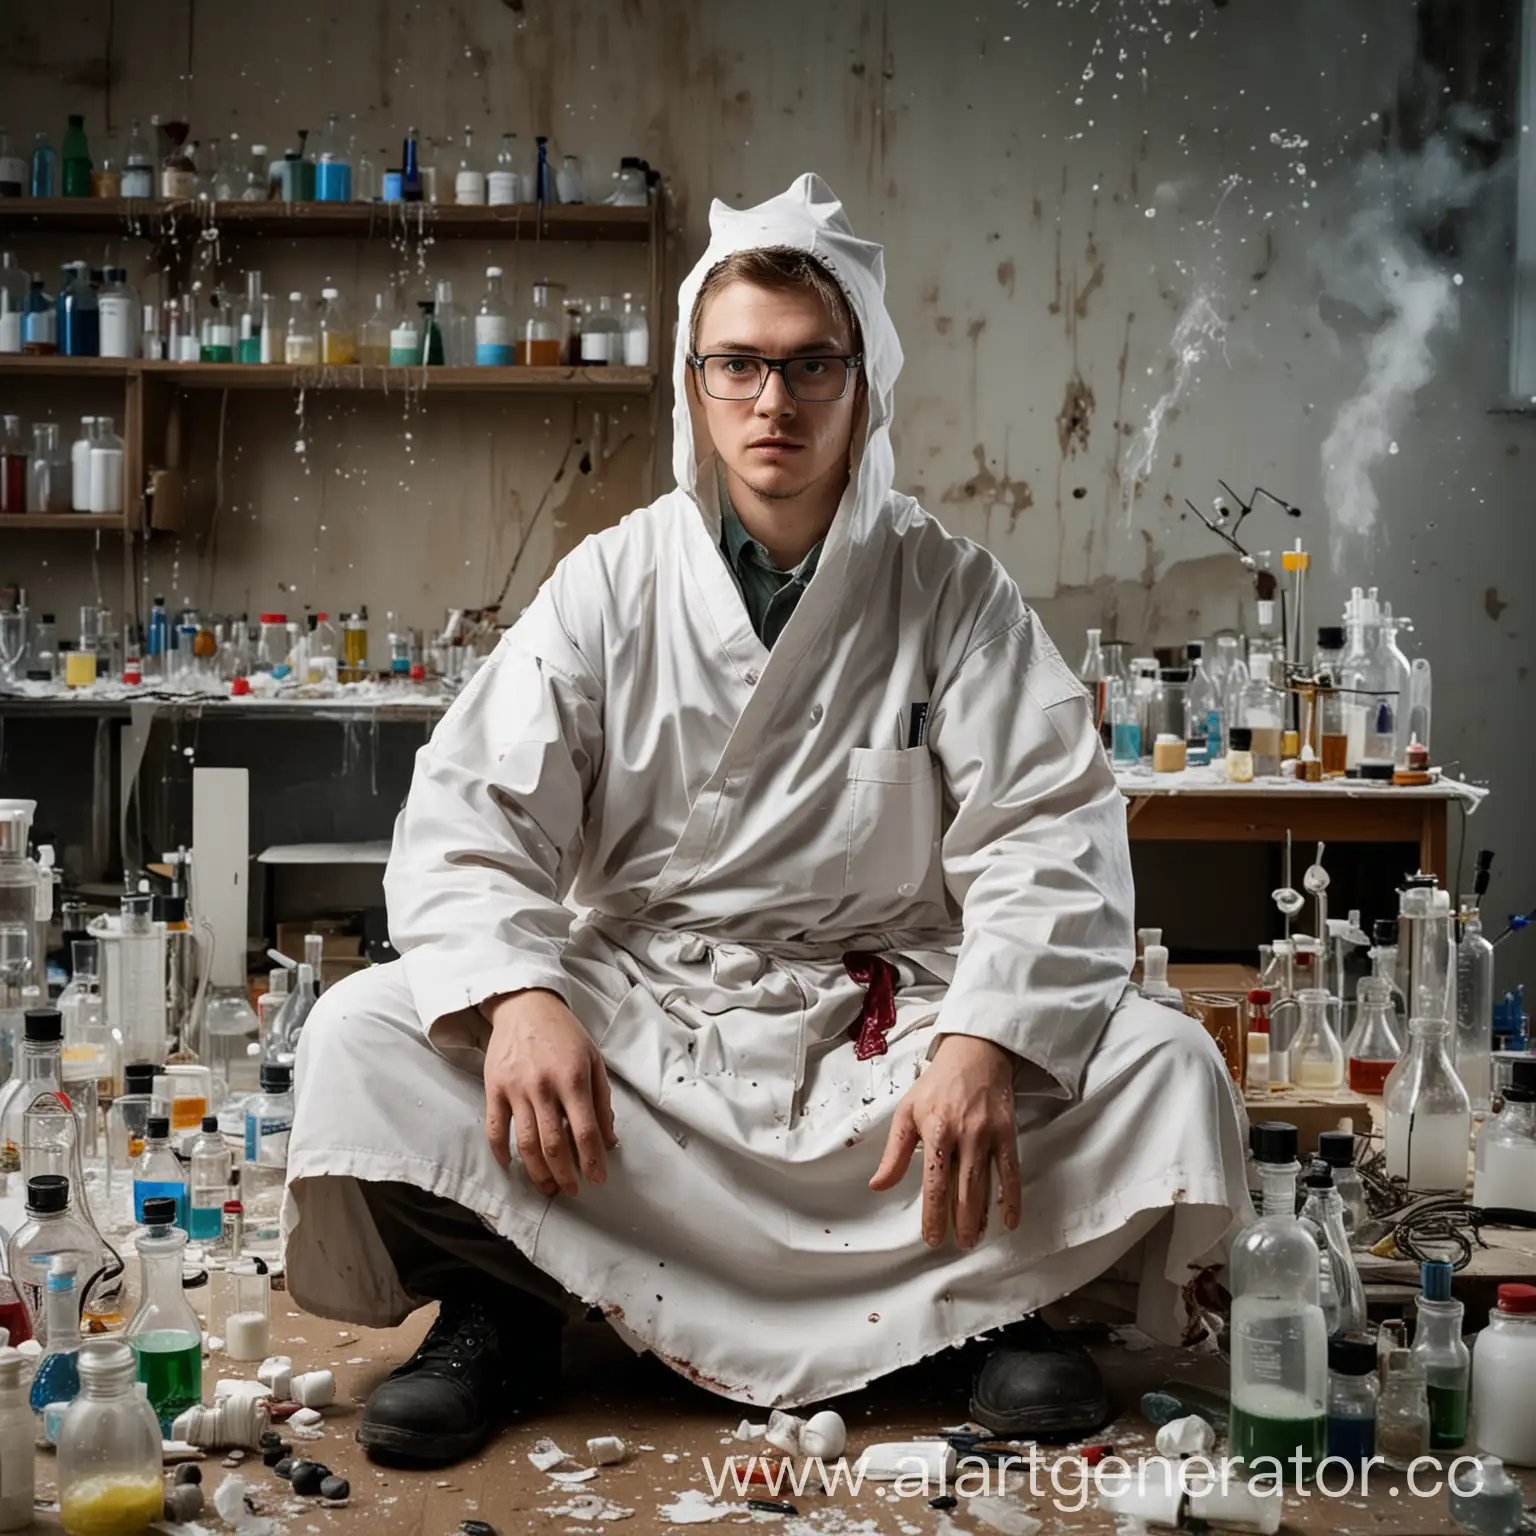 Лаборант в биохимической лаборатории, вокруг хаос, все реактивы взорвались, он сидит в порванном халате и шапочке